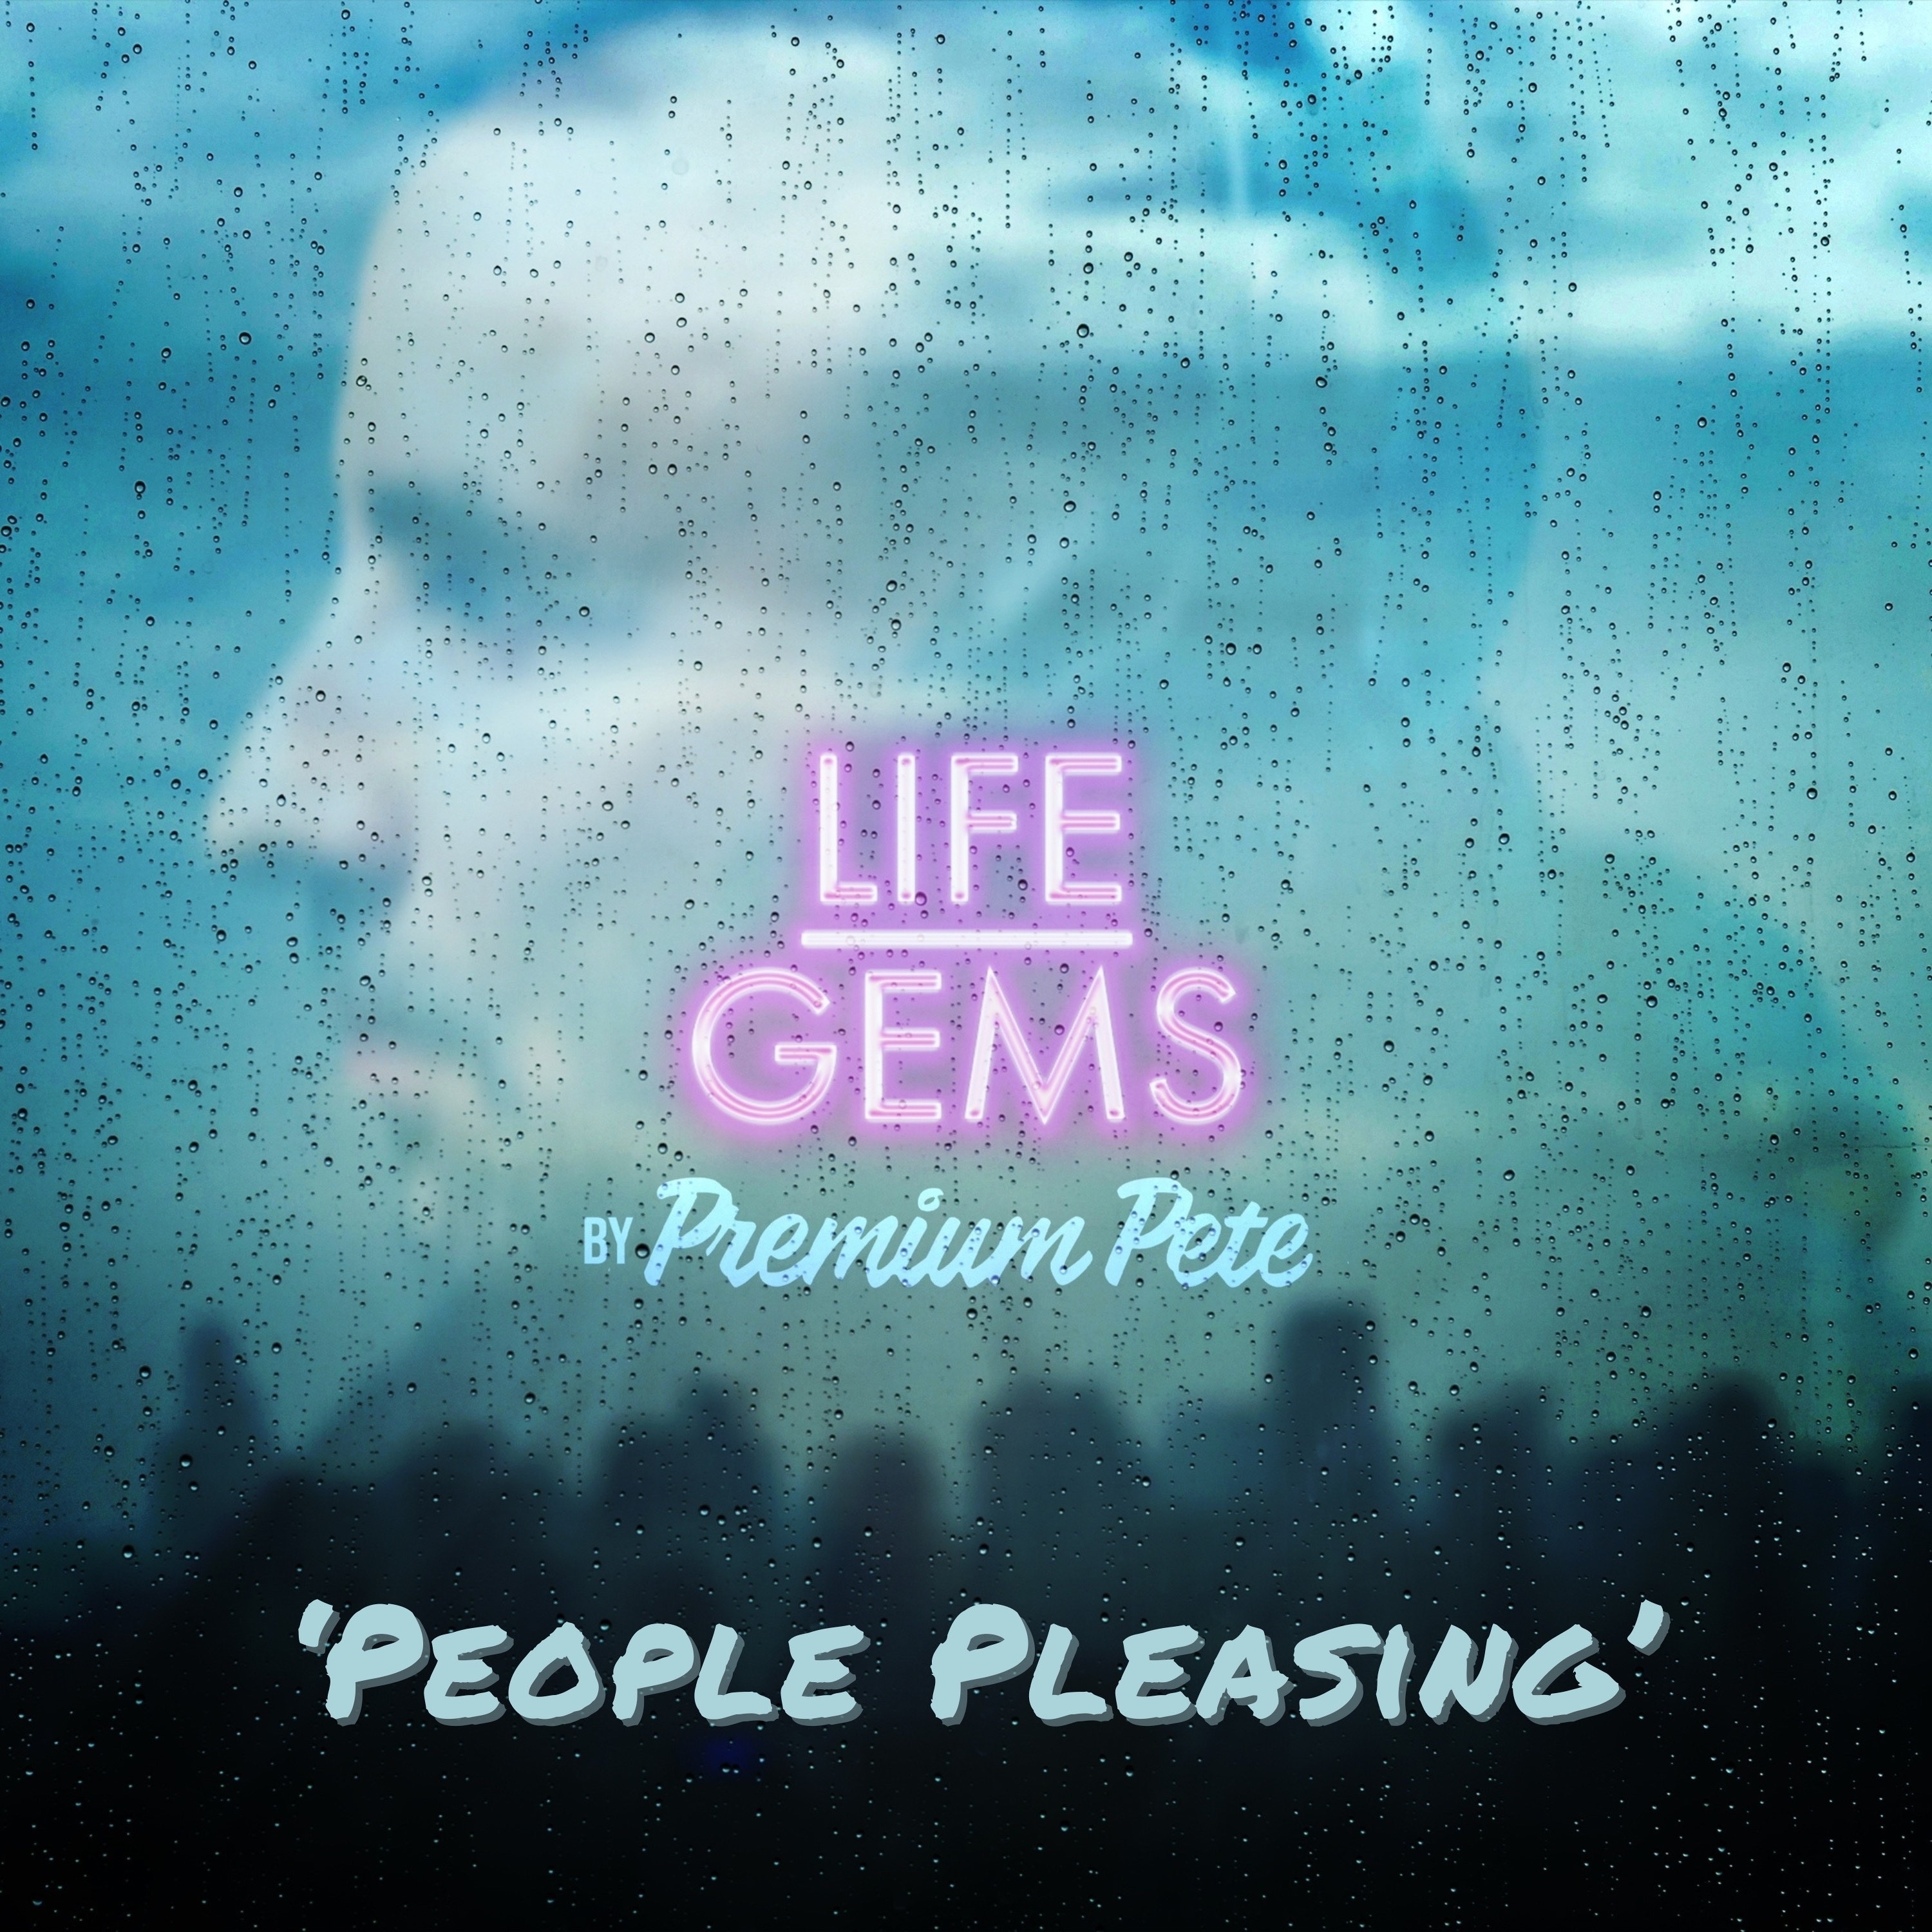 Life Gems ”People Pleasing”